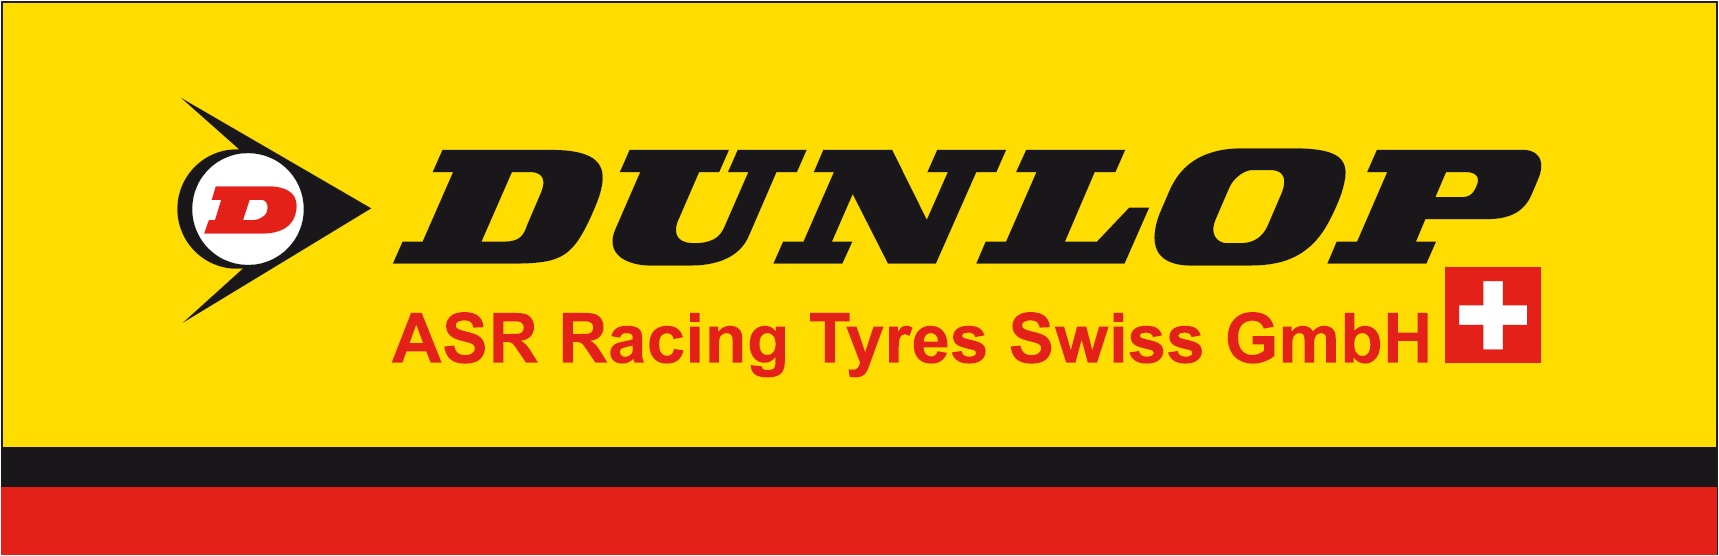 ASR Tyres Swiss